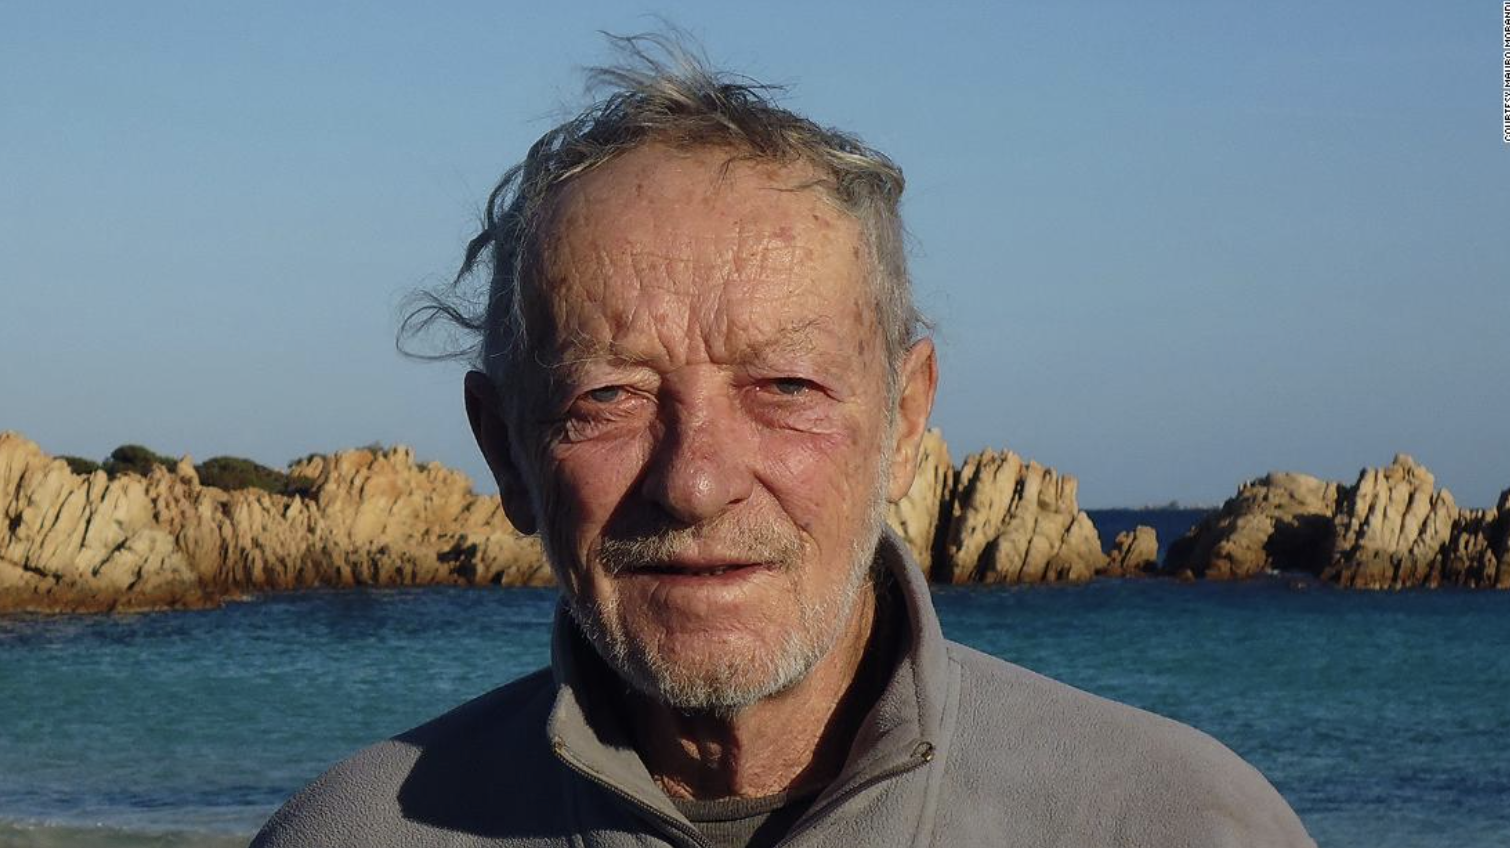 Un Robinson Crusoe italiano de 81 años abandona su isla tras 32 viviendo solo en ella. Foto-Mauro Morandi